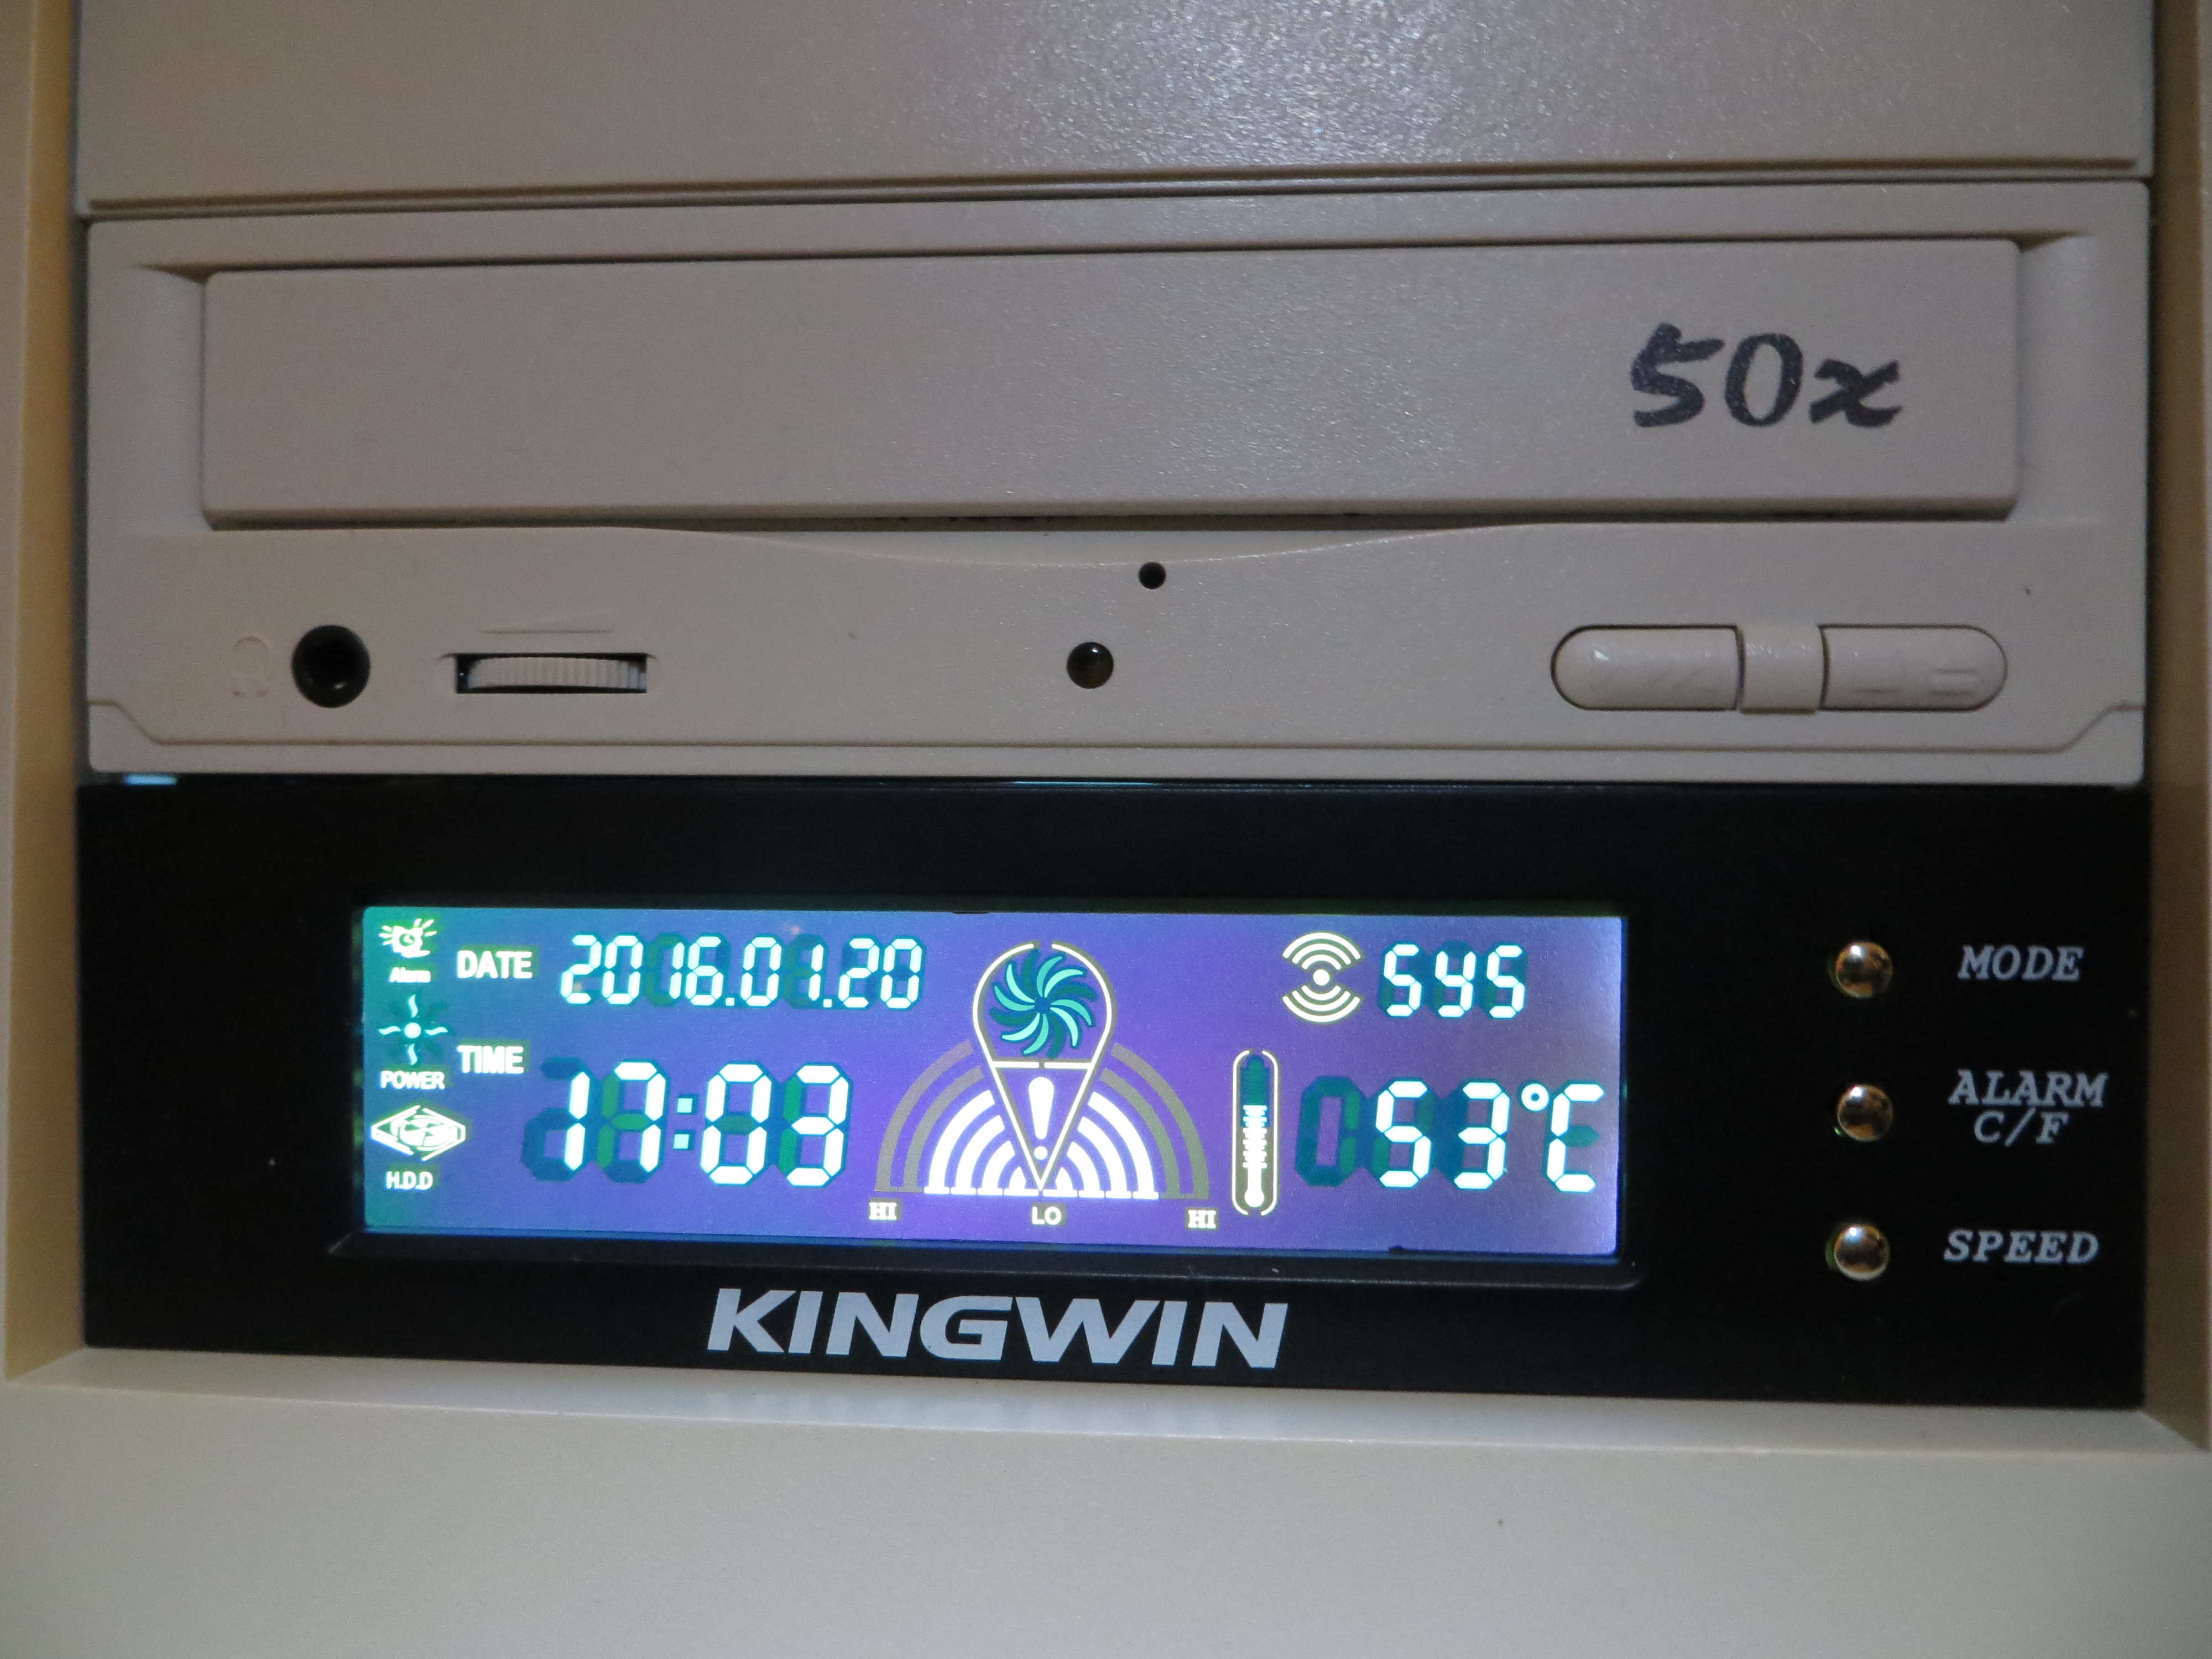 Intel Pentium II Temperature Monitor